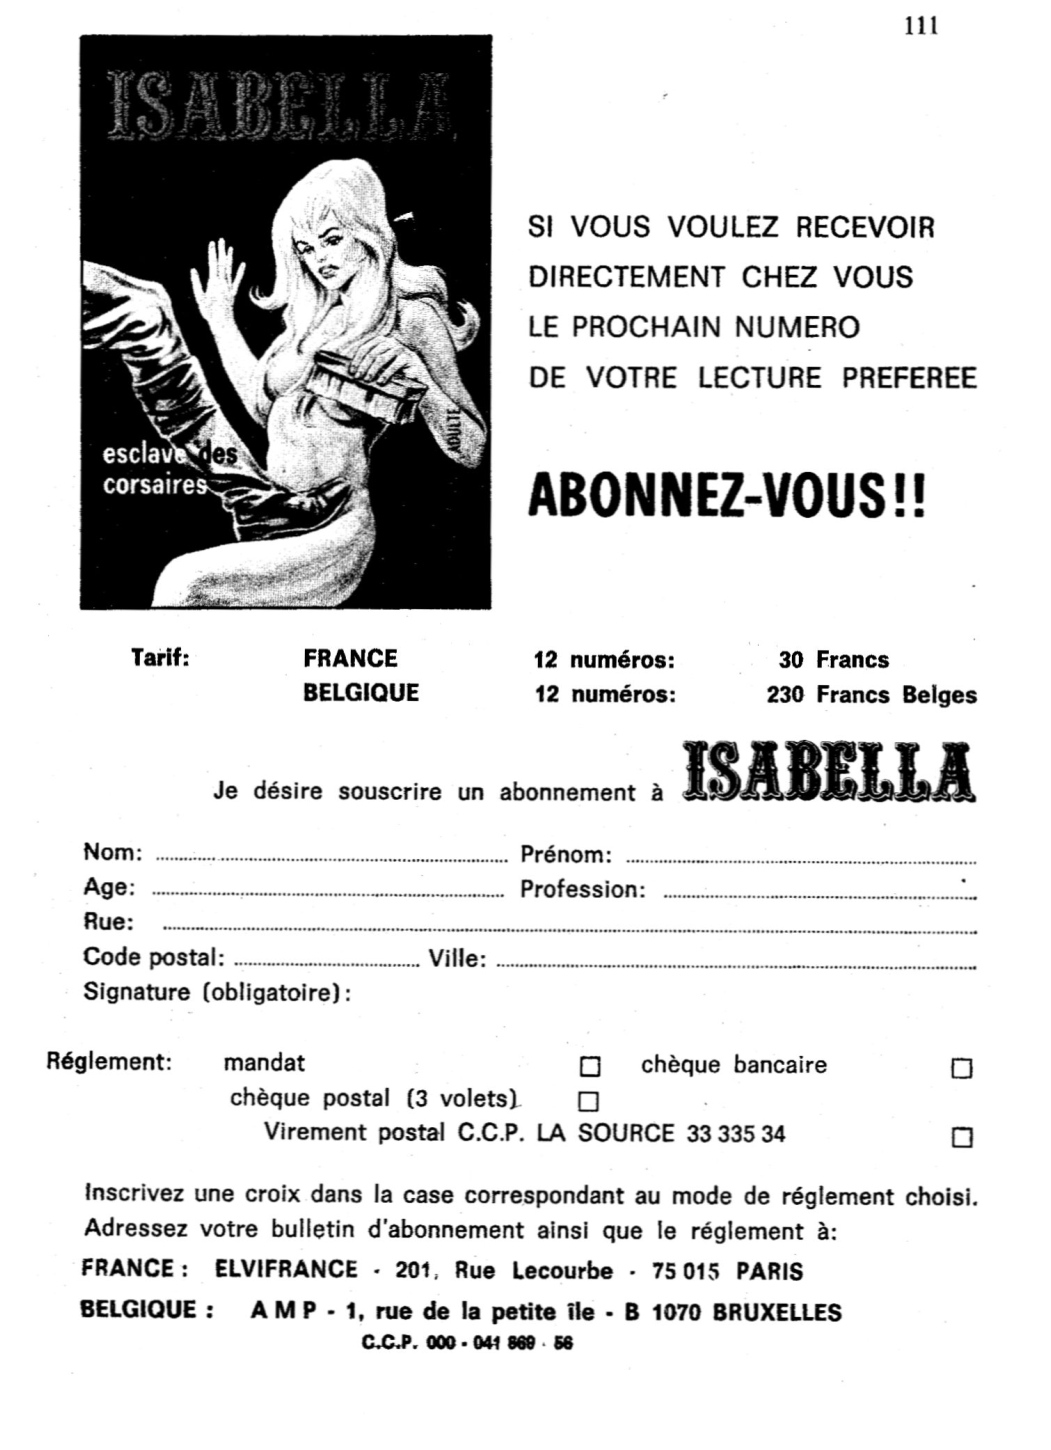 Isabella, la Duchesse du Diable - T083 - Ignoble chantage numero d'image 111